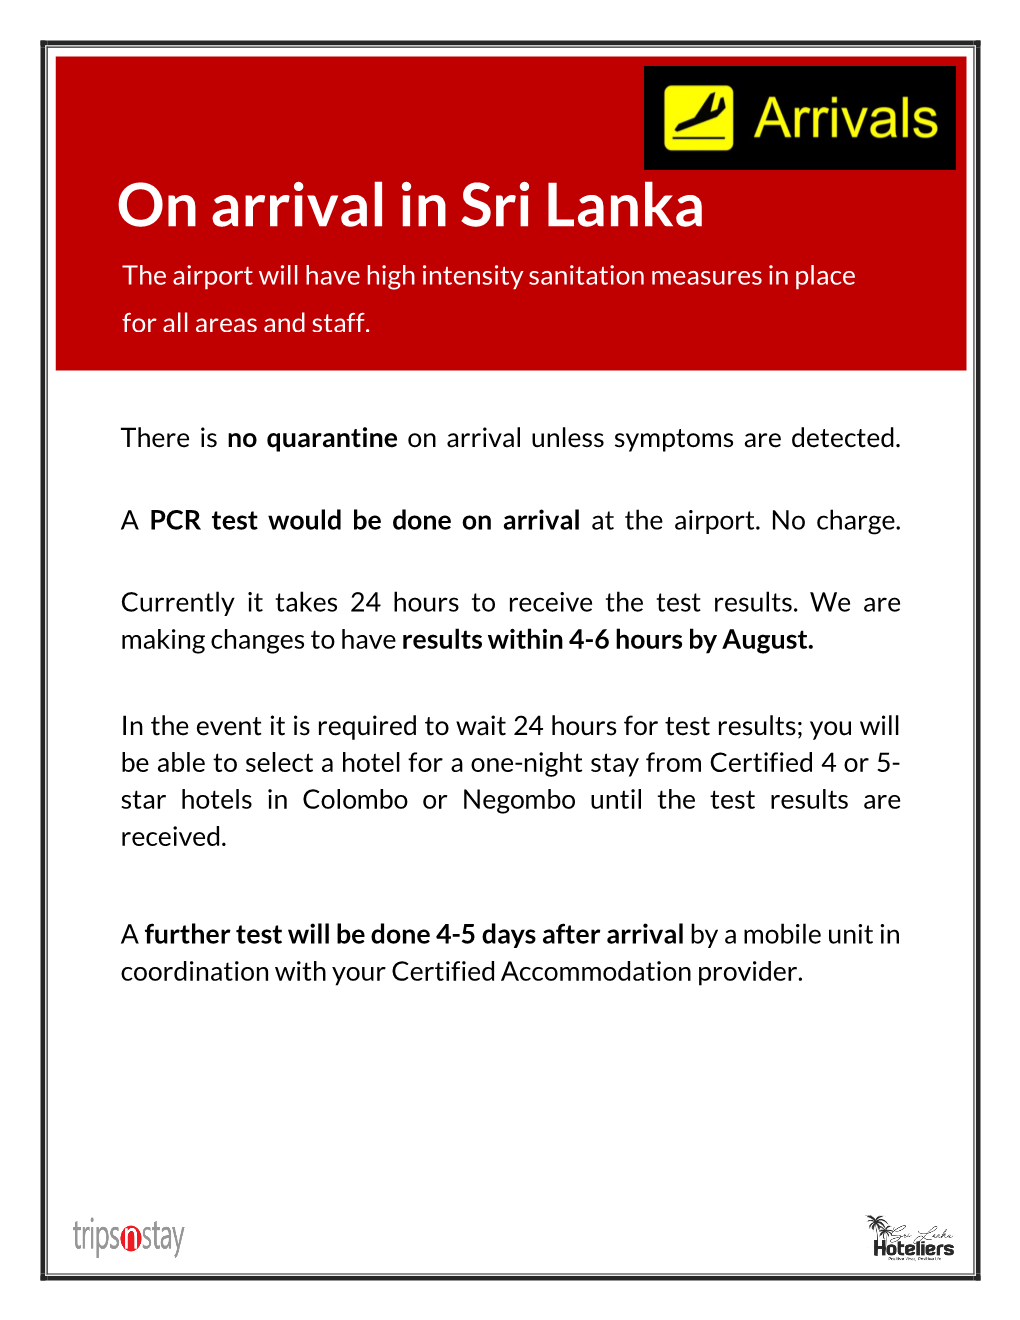 On Arrival in Sri Lanka